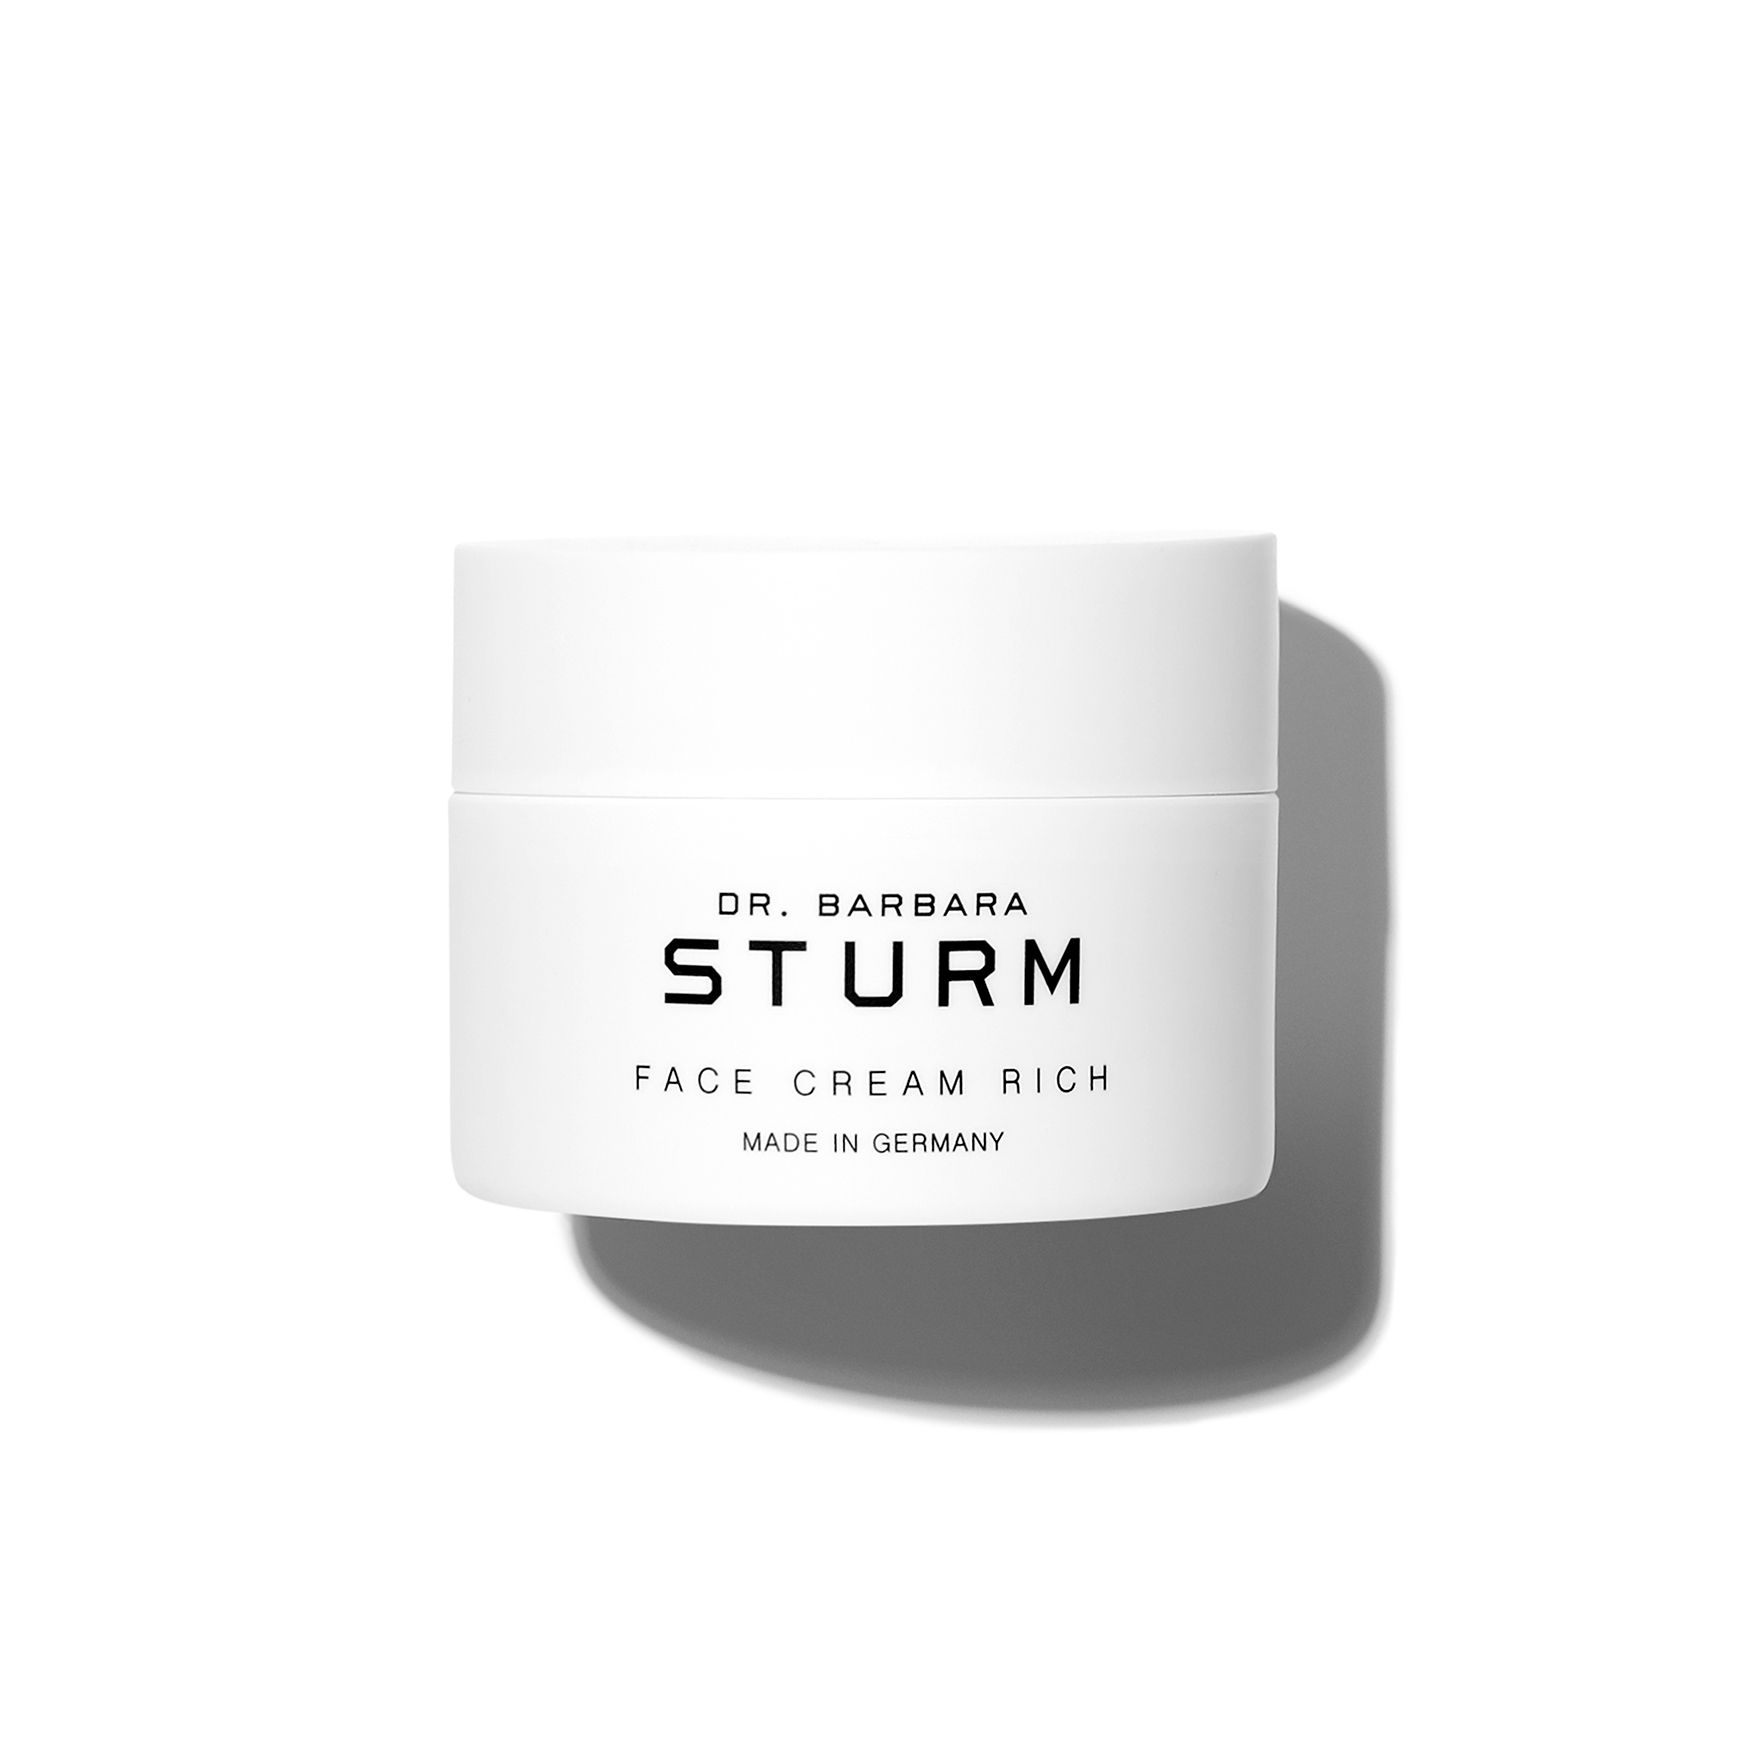 Dr. Barbara Sturm

Face Cream Rich

50ML | Space NK (EU)